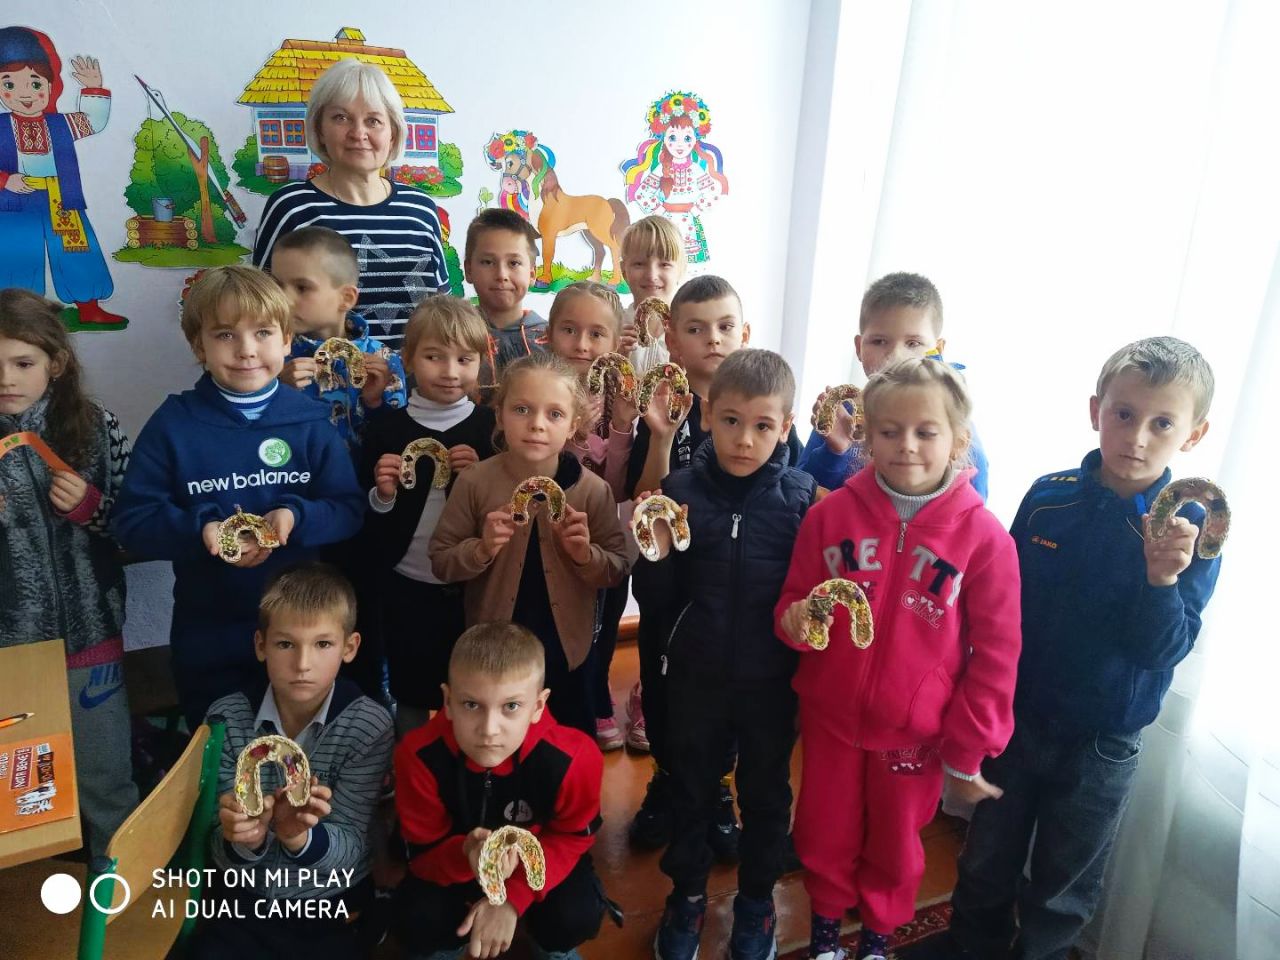 Шепетівчани здобули нагороду на Всеукраїнській дитячо-юнацькій еколого-патріотичній грі